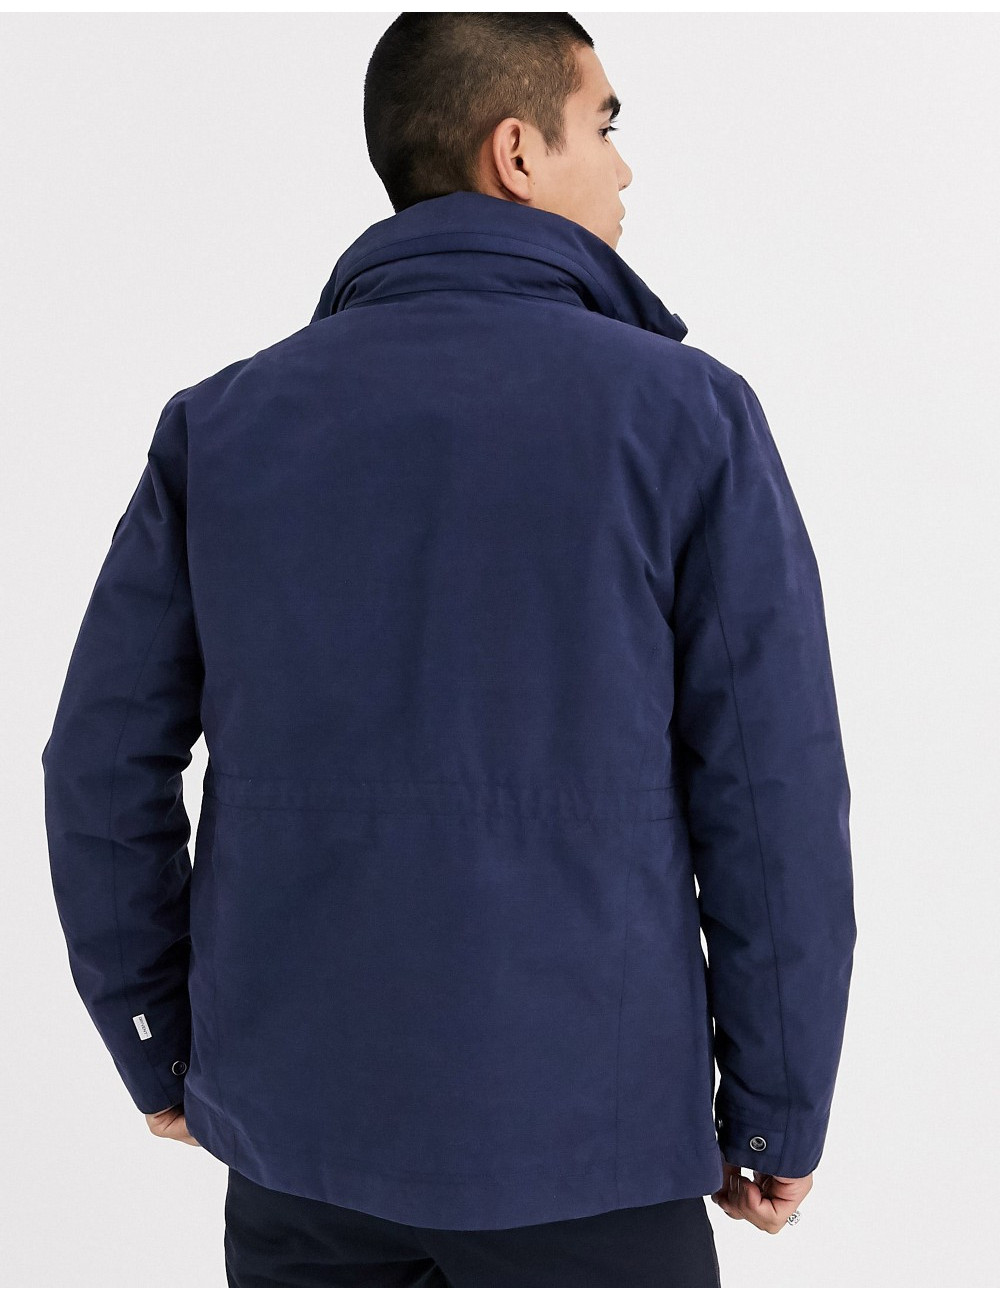 Timberland m65 jacket